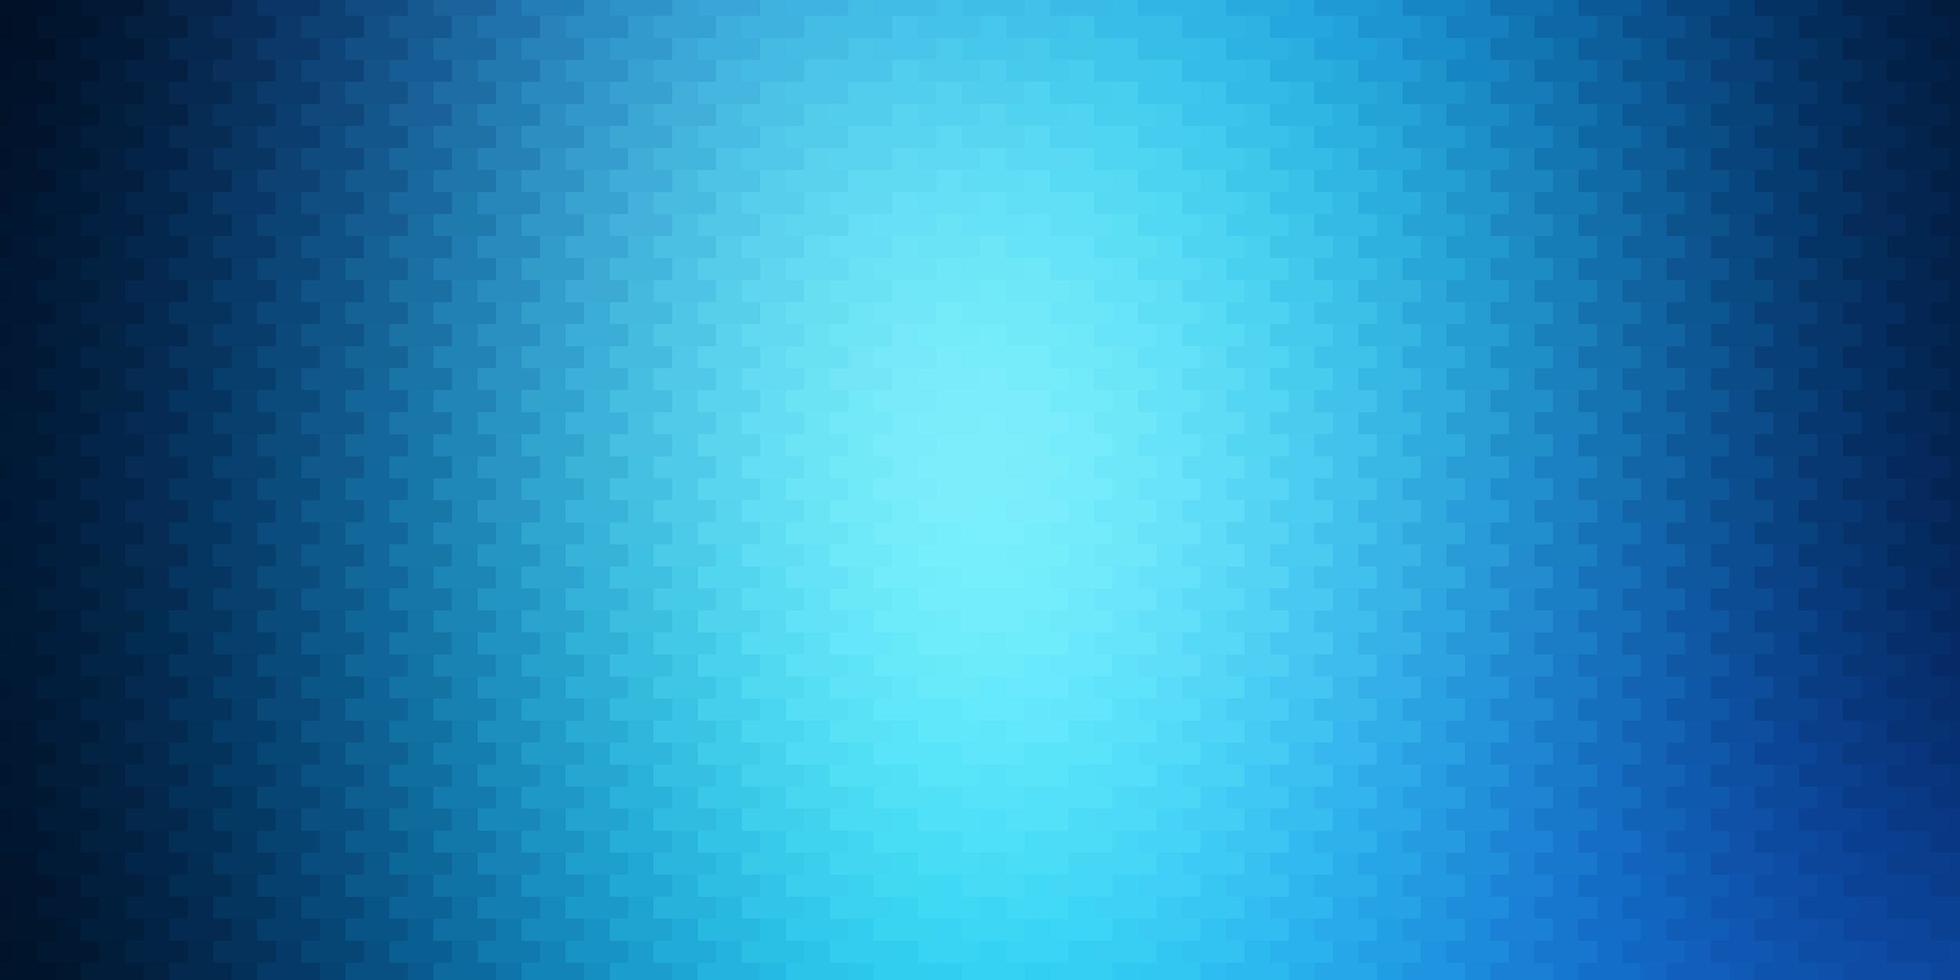 fond de vecteur bleu clair avec illustration de dégradé abstrait rectangles avec motif de rectangles colorés pour les pages de destination des sites Web